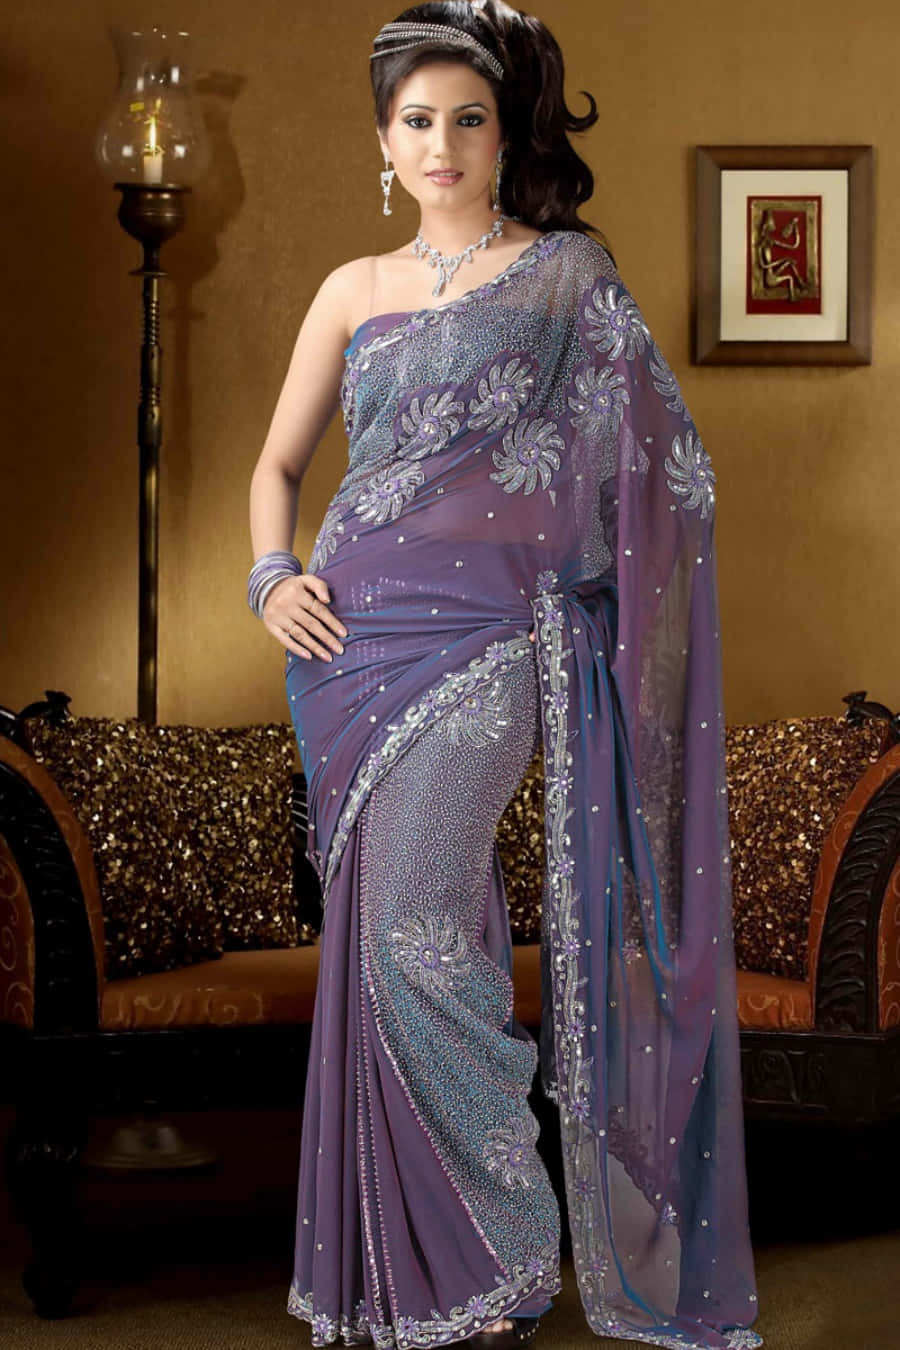 A Beautiful Woman In A Purple Sari